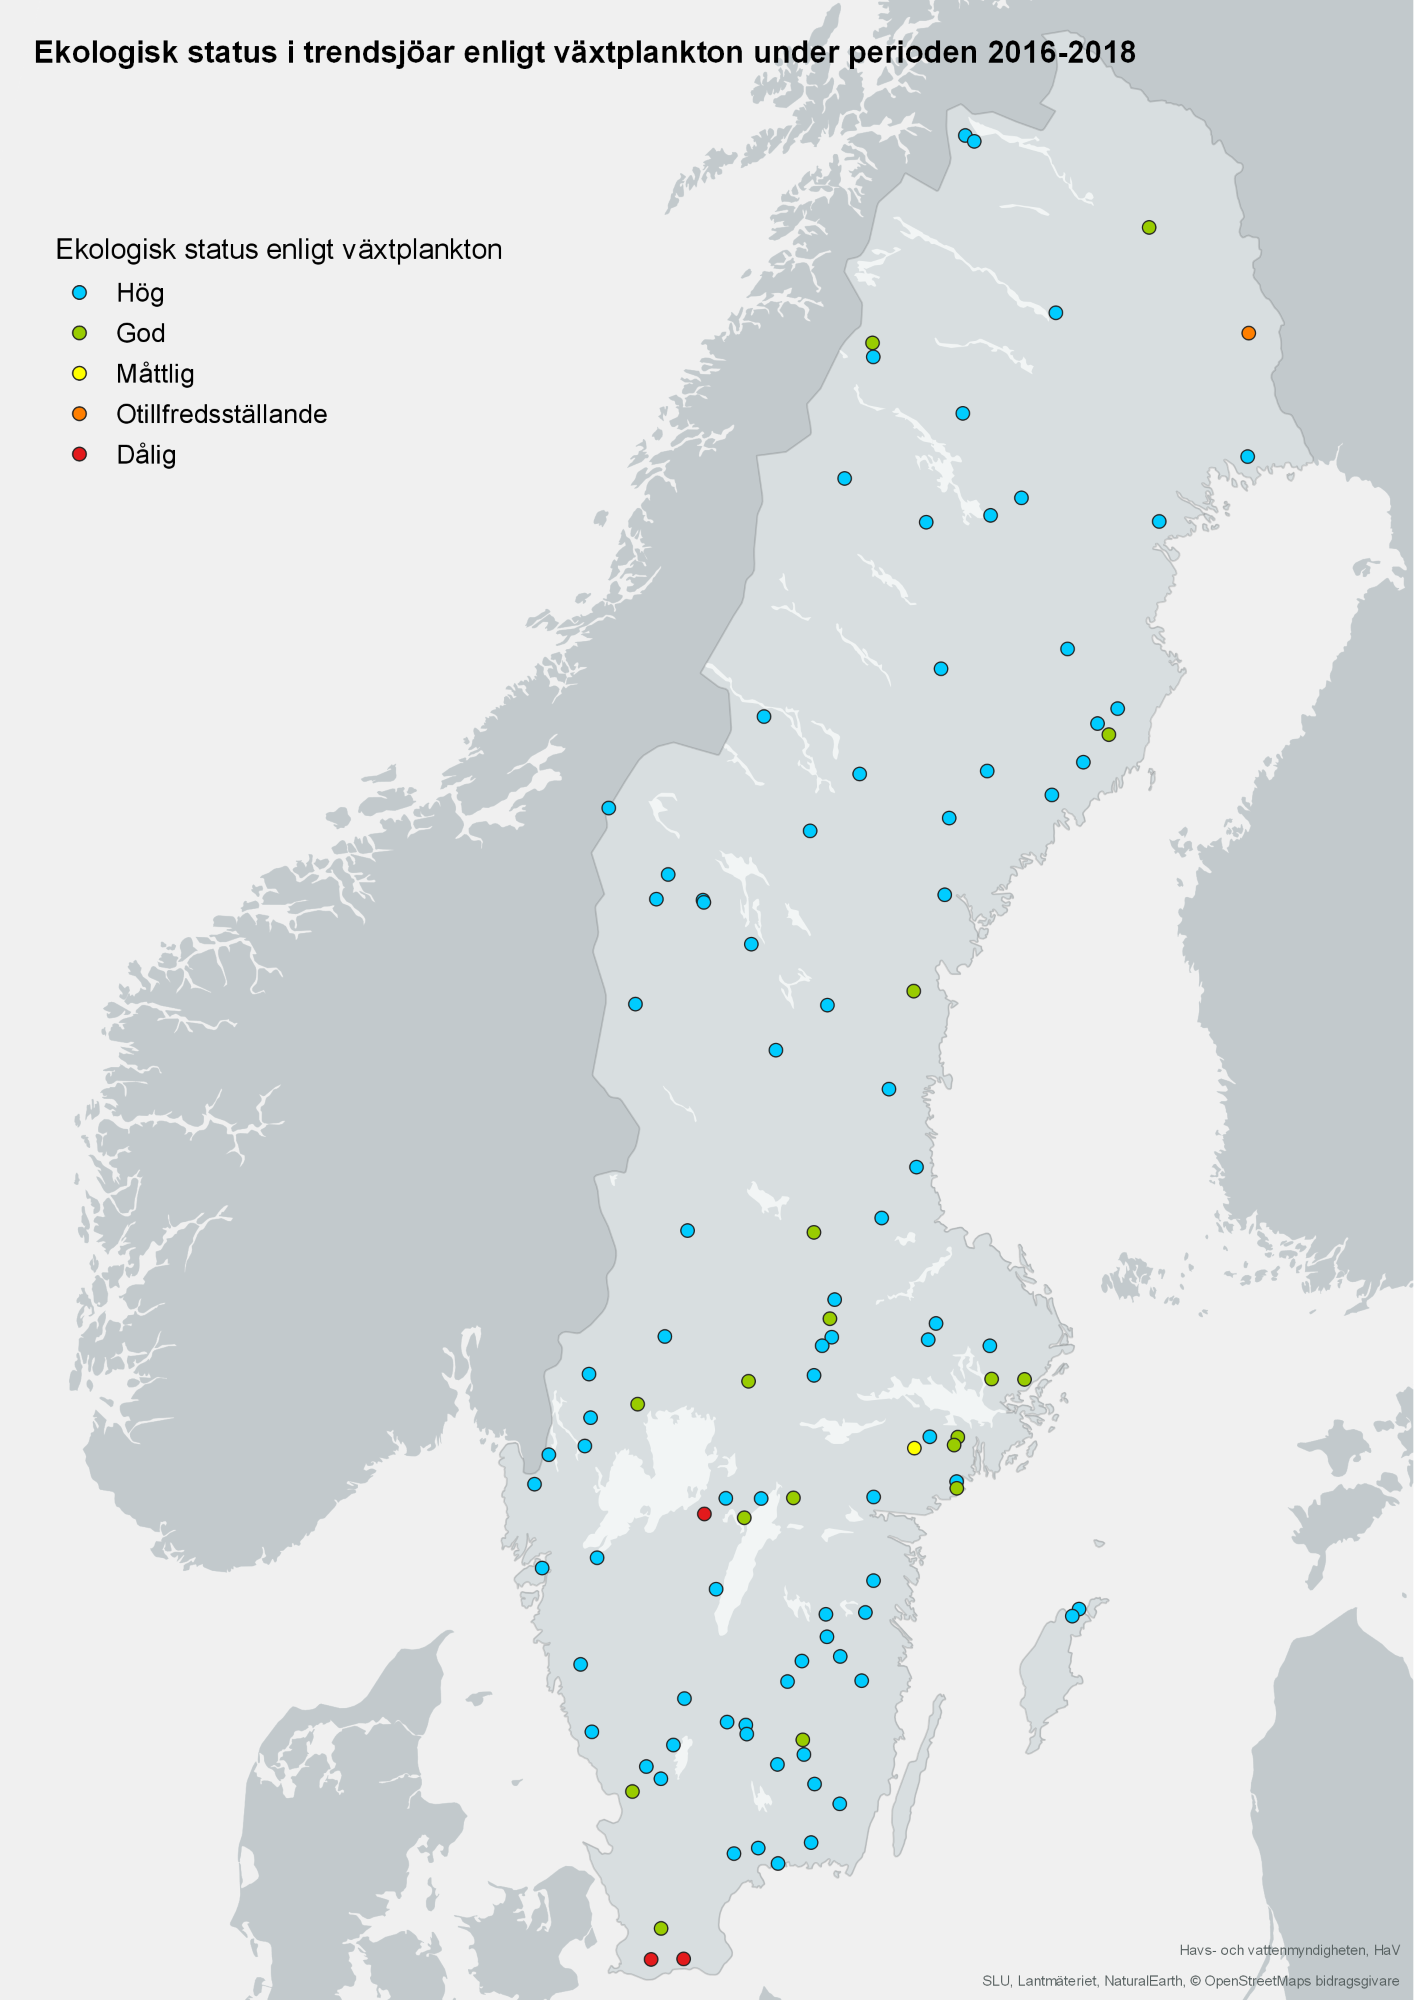 Status i trendsjöar vad gäller växtplankton 2016-2018. Karta, illustration.